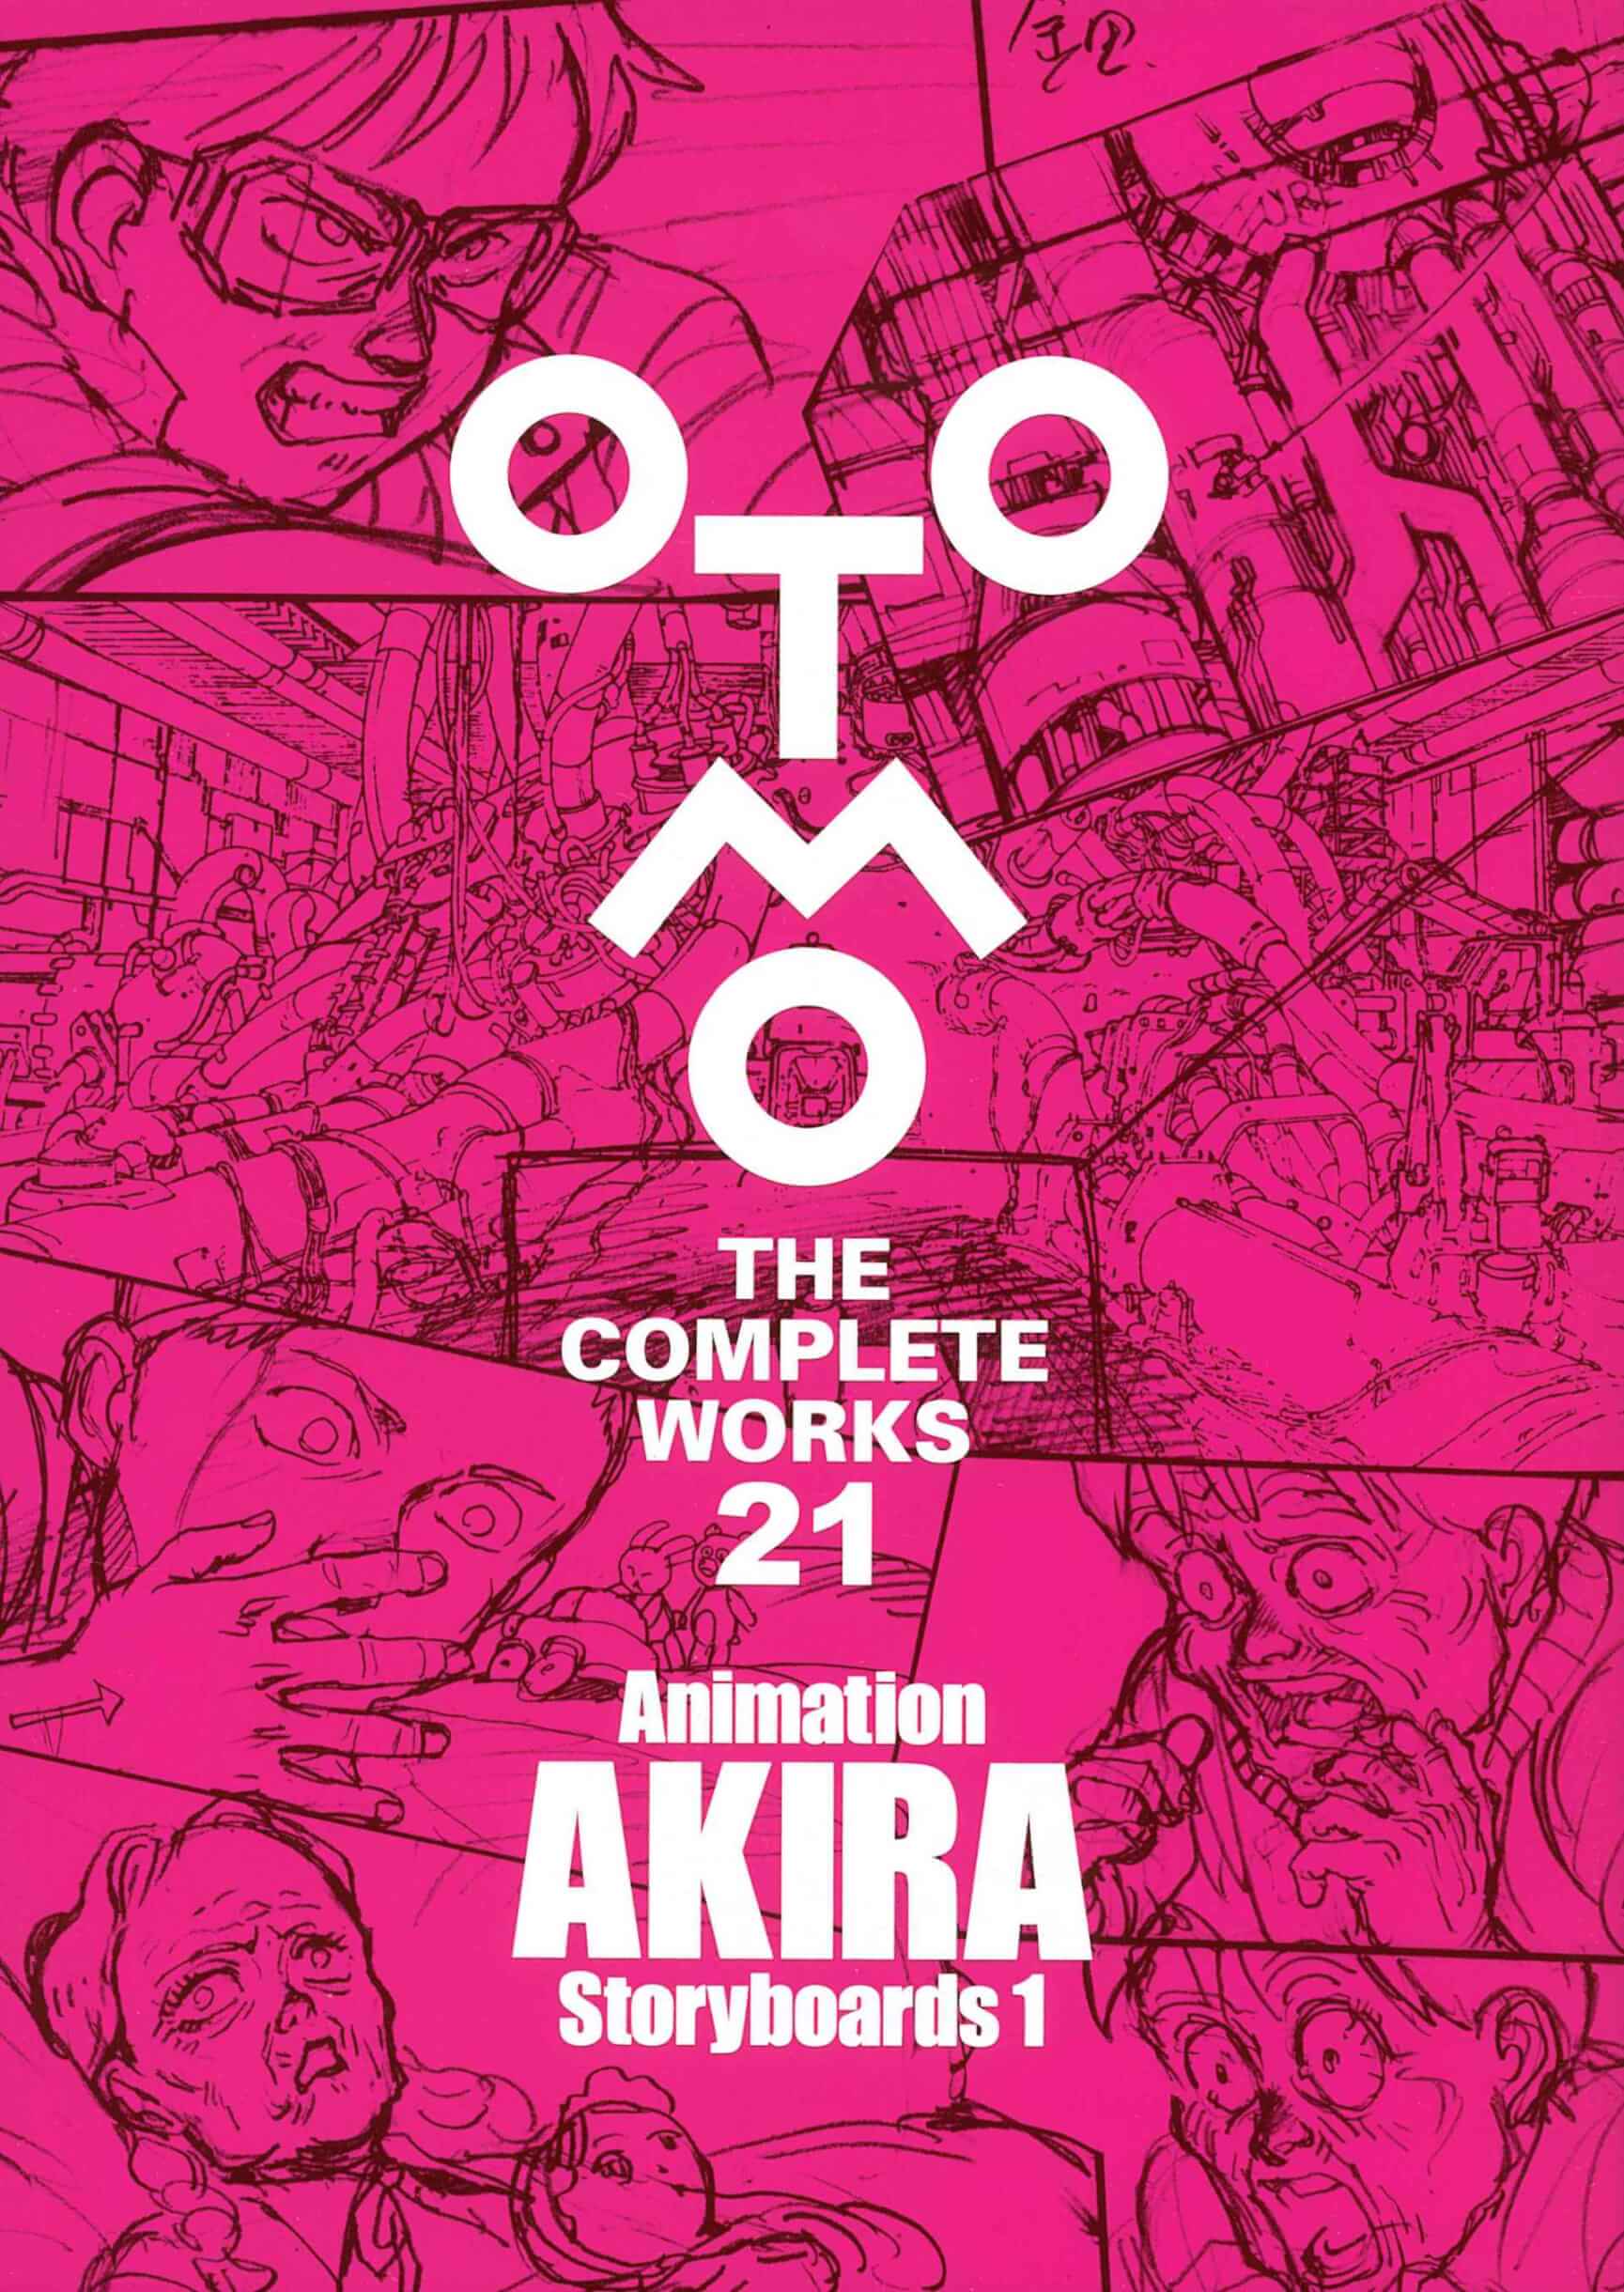 大友克洋全集『OTOMO THE COMPLETE WORKS』が2冊同時刊行開始